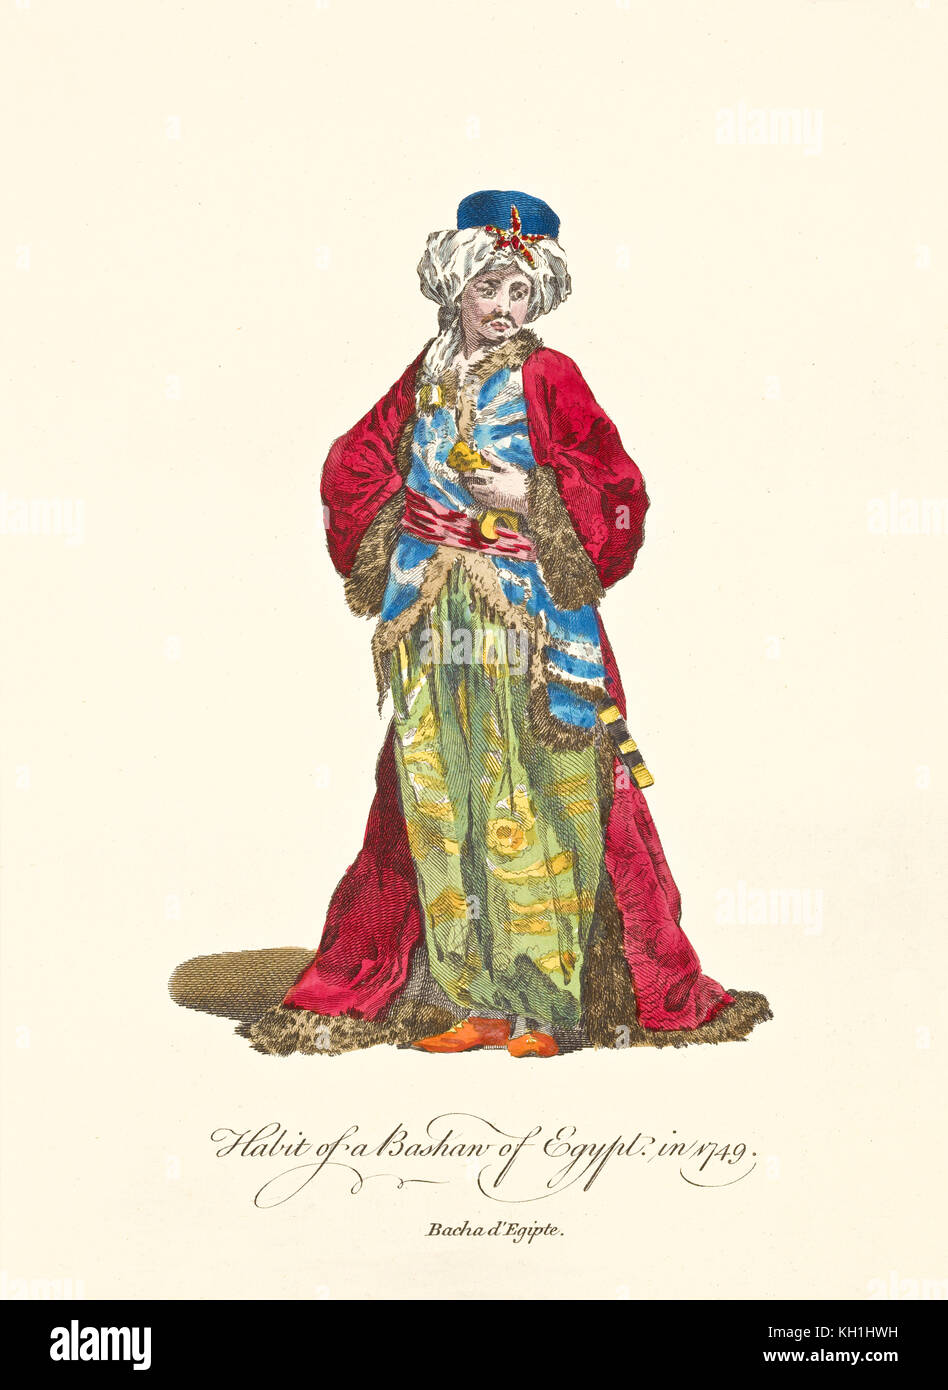 Vieux illustratiion de pacha égyptien en vêtements traditionnels en 1749. Par J.M. Vien, publ. T. Jefferys, Londres, 1757-1772 Banque D'Images